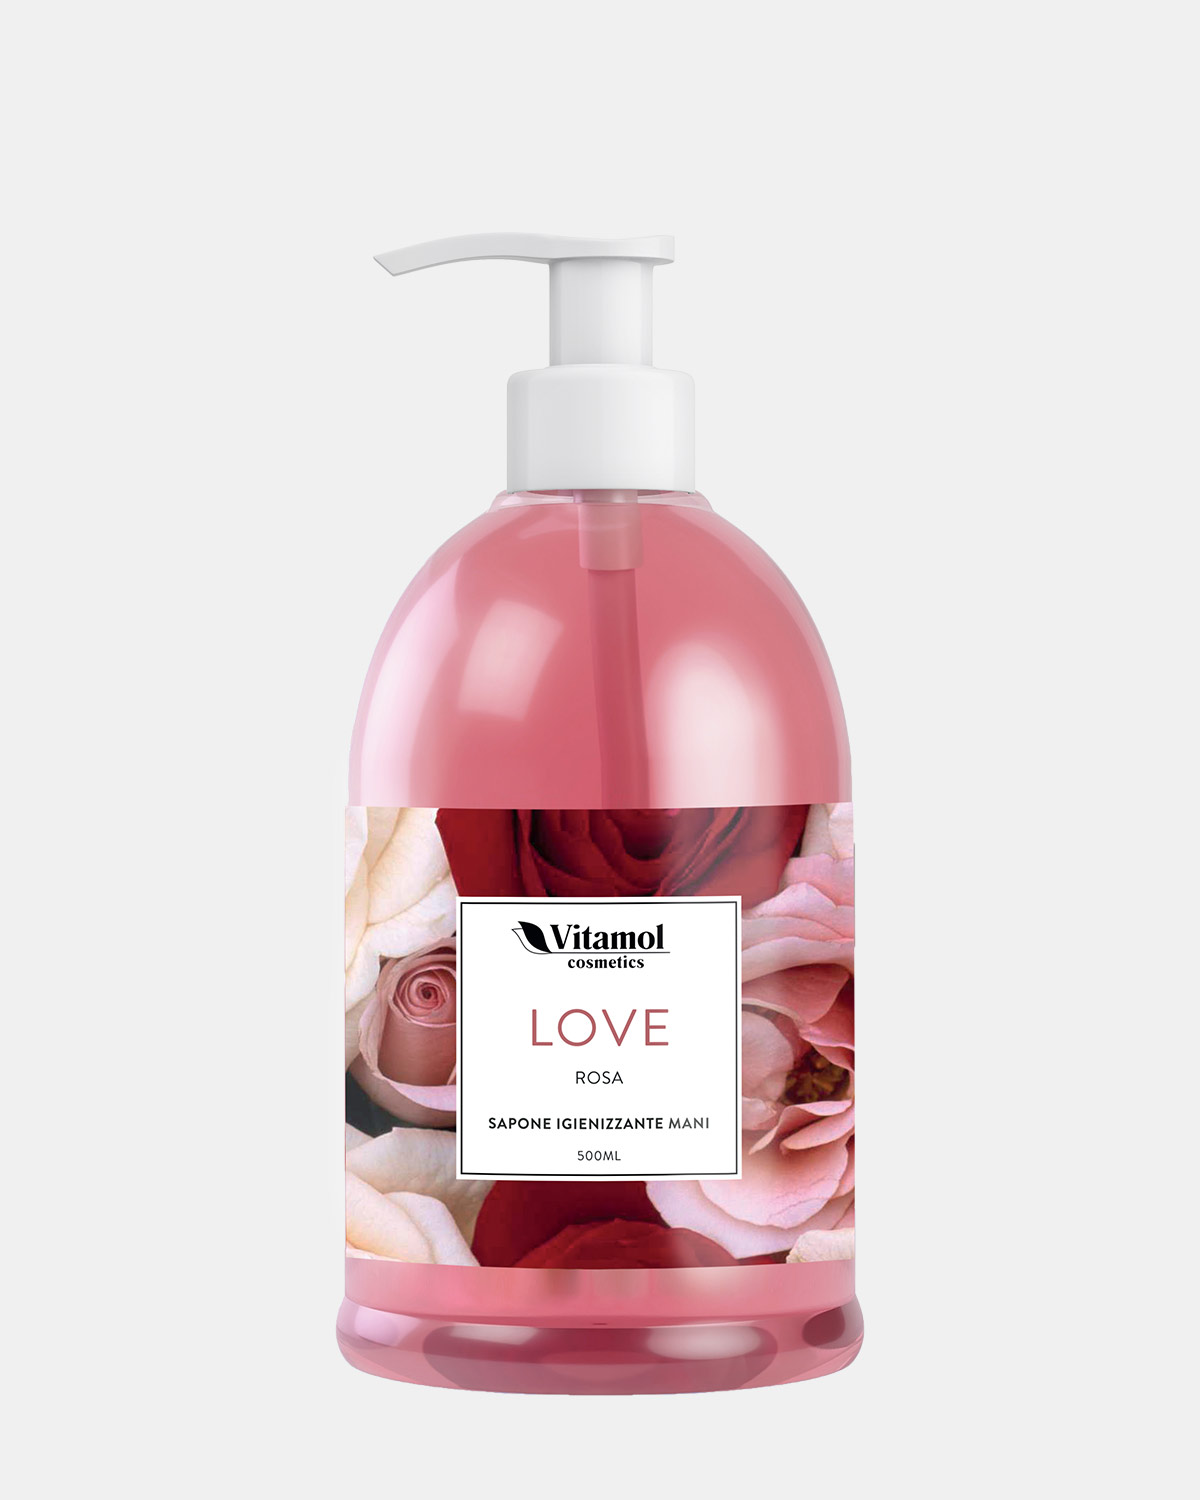 LOVE - Sapone liquido mani igienizzante alla Rosa, Shop online